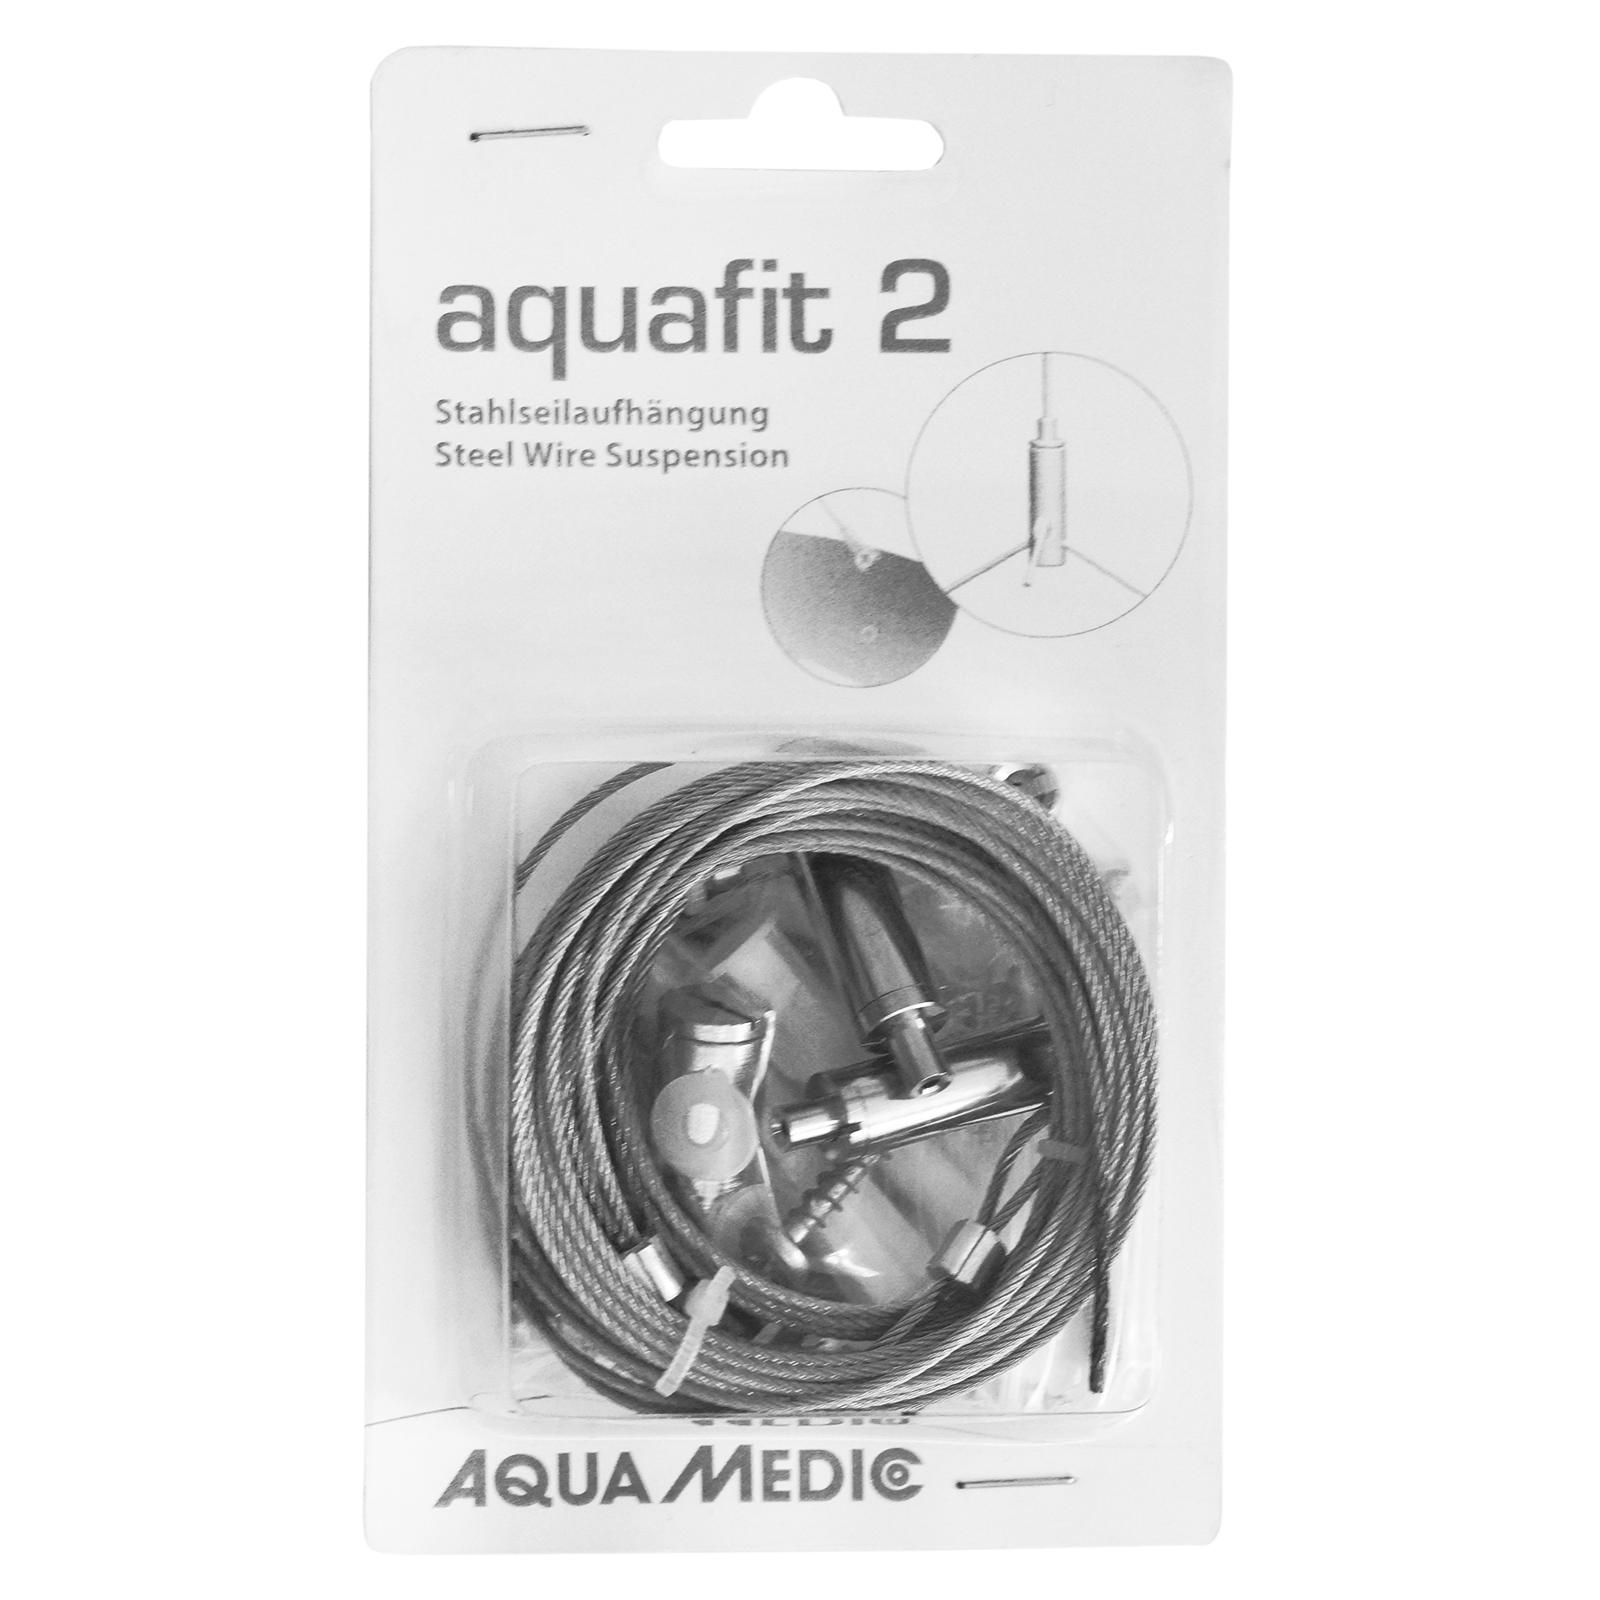 aquafit 2 - Stahlseilaufhängung - Aqua Medic